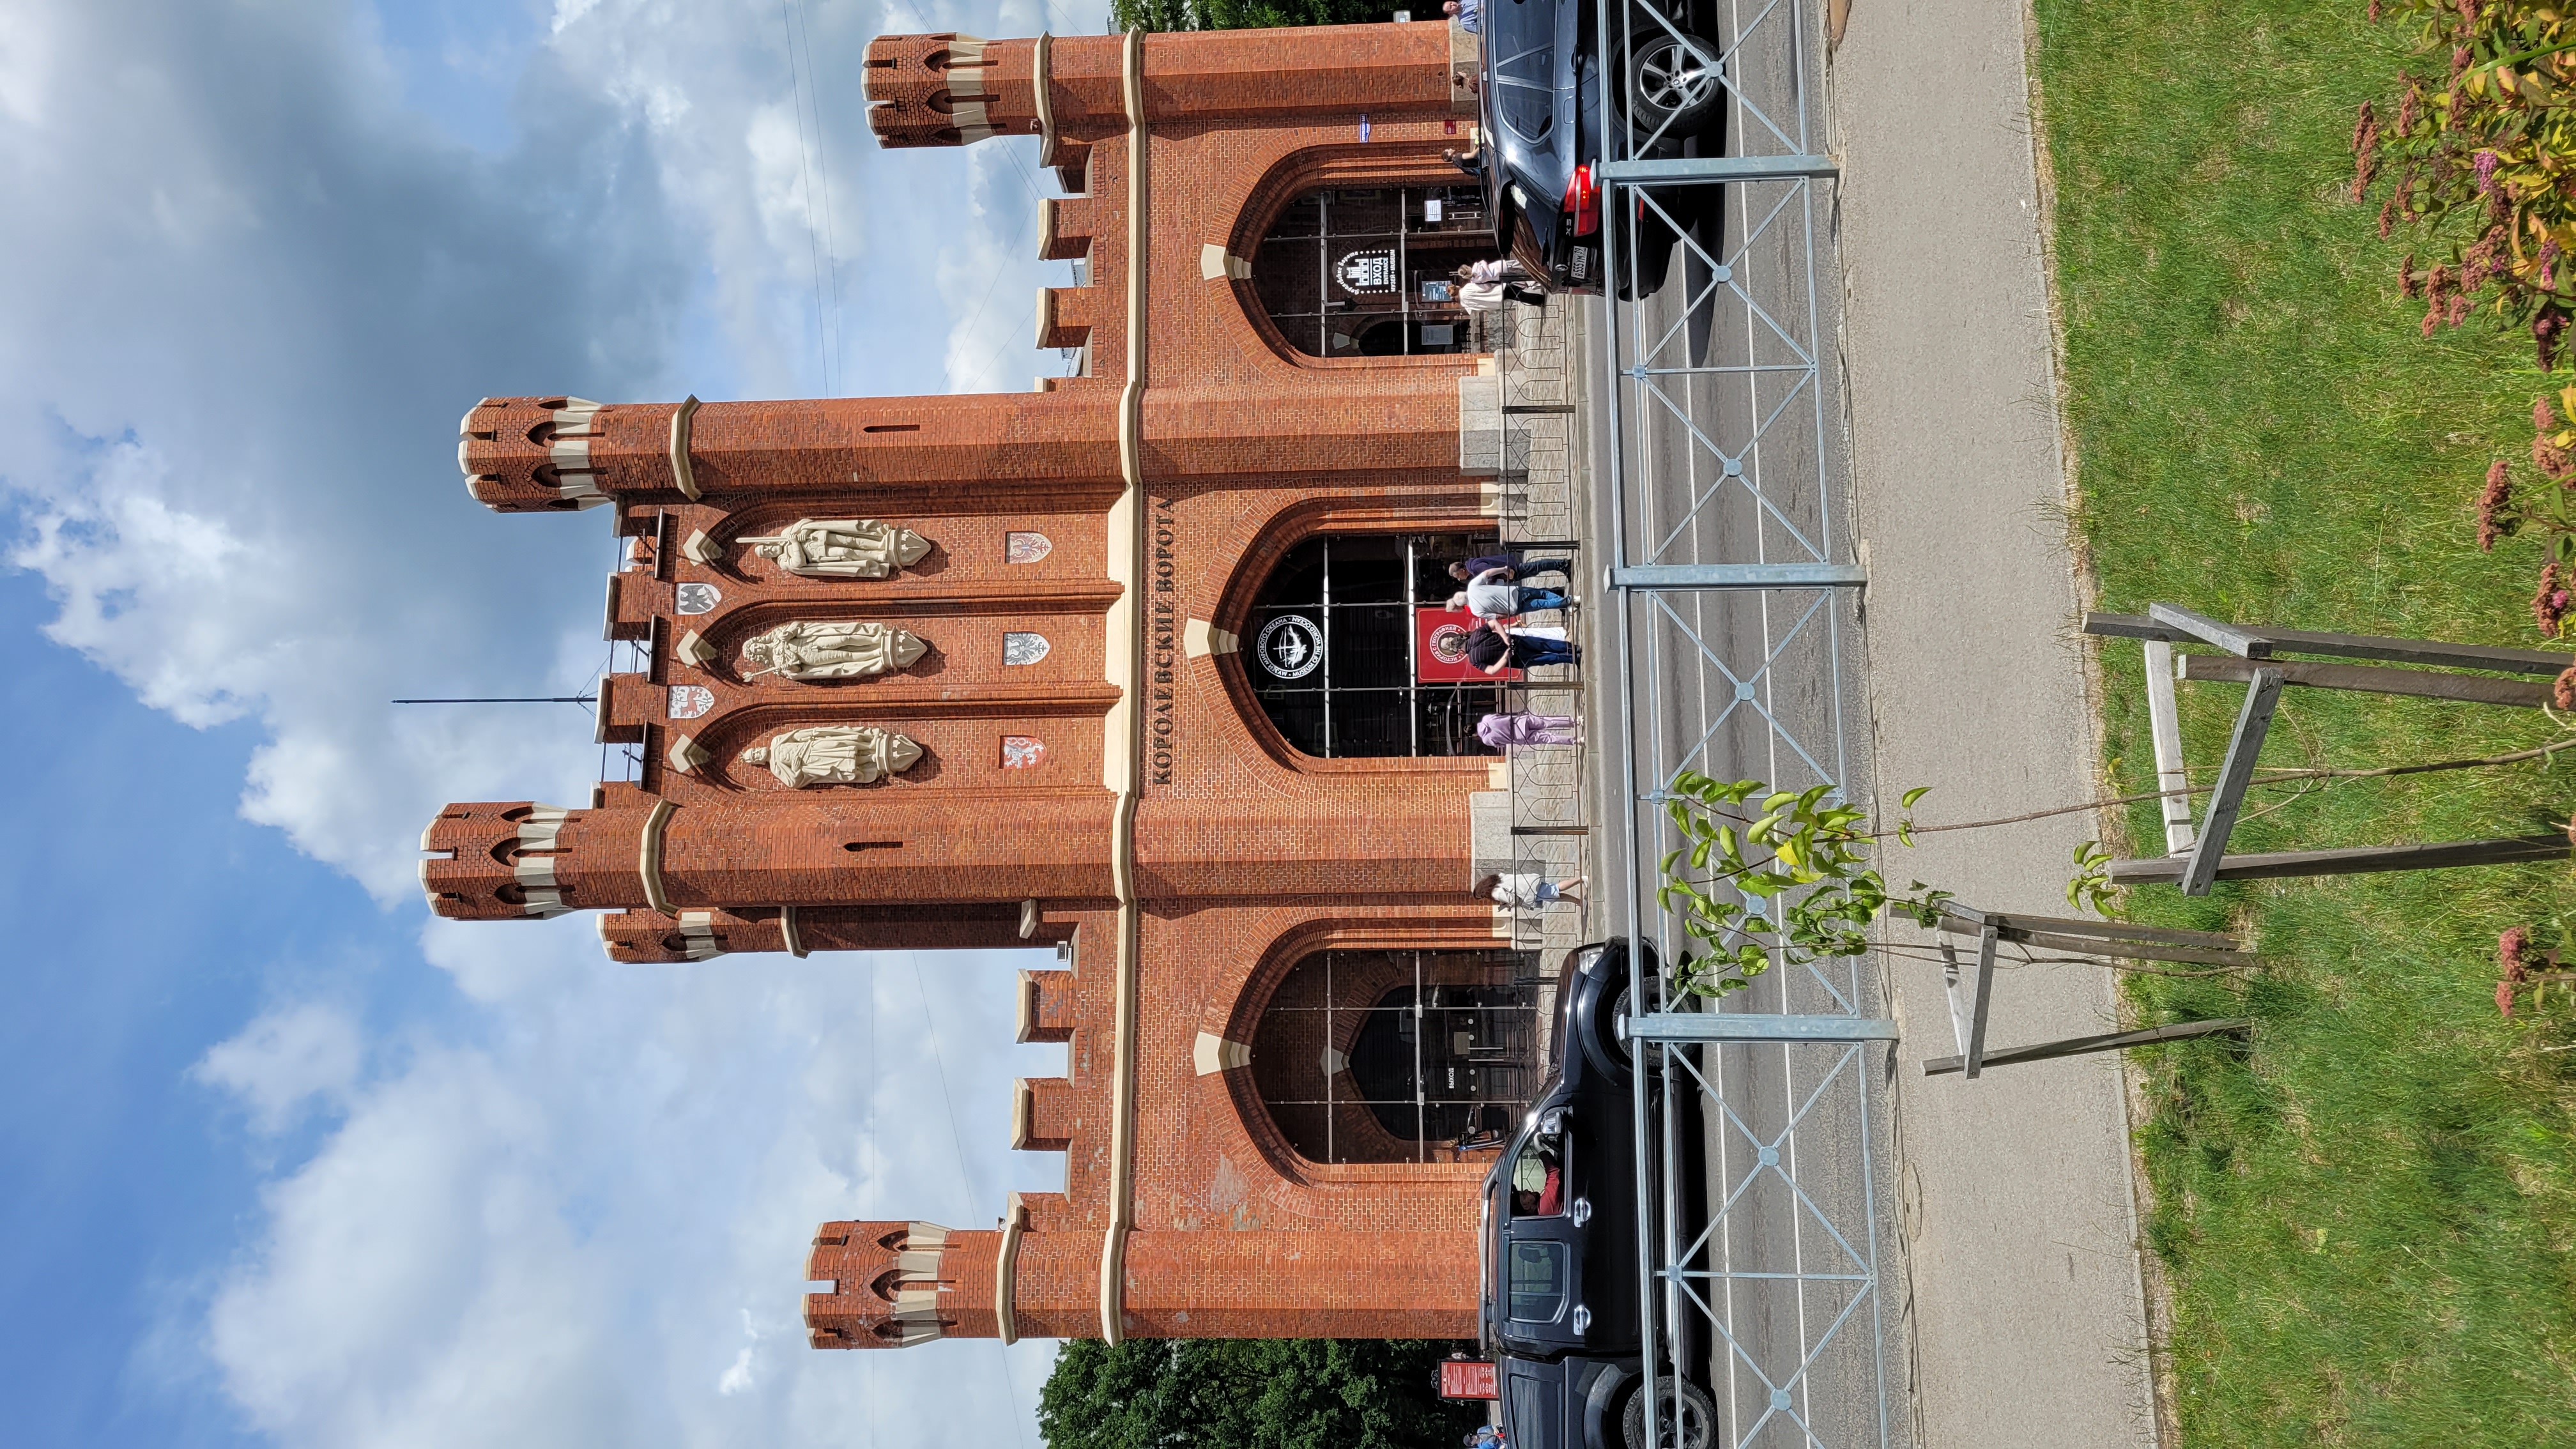 Изюминка Калининграда: Королевские ворота Кёнигсберга